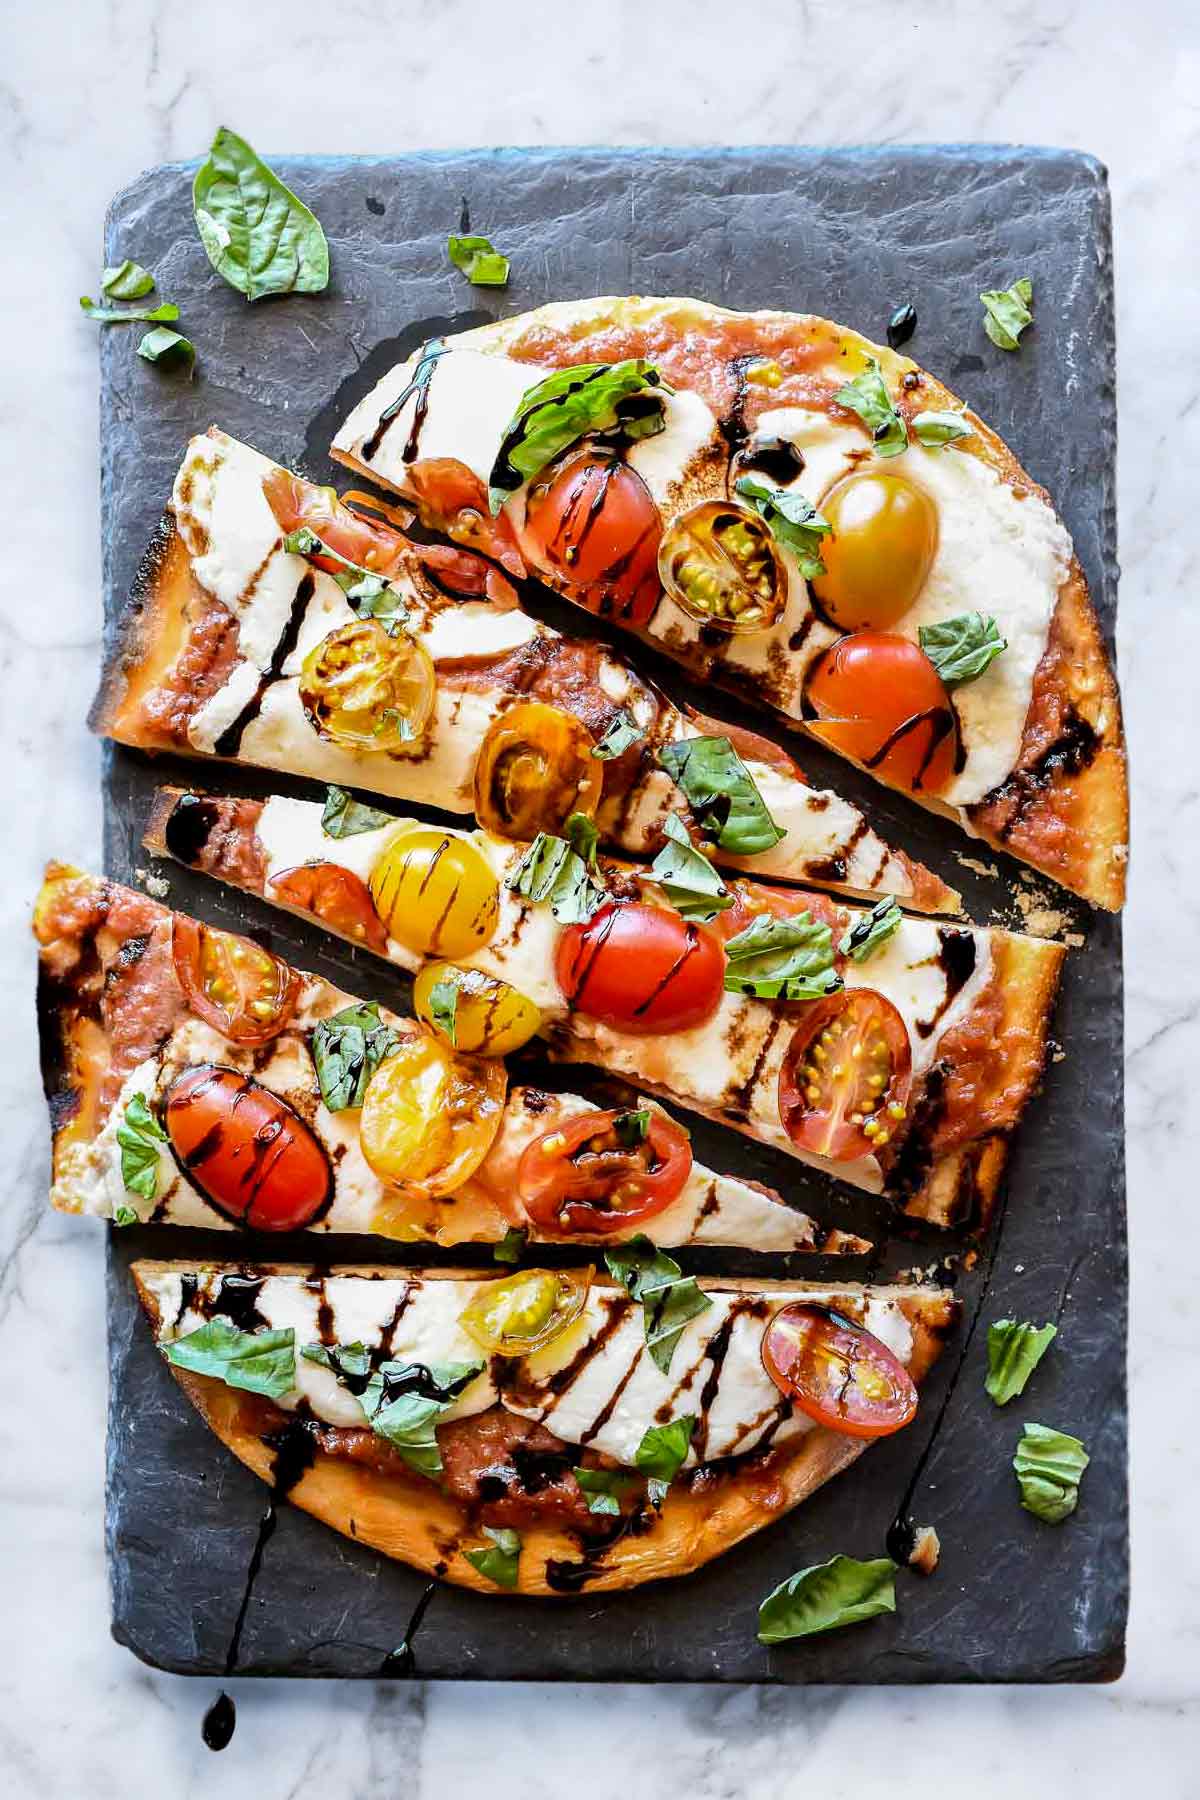 Pain plat à la mozzarella et aux tomates Caprese | foodiecrush.com #pizza #tomate #mozzarella #appertisant #recettes #dîner